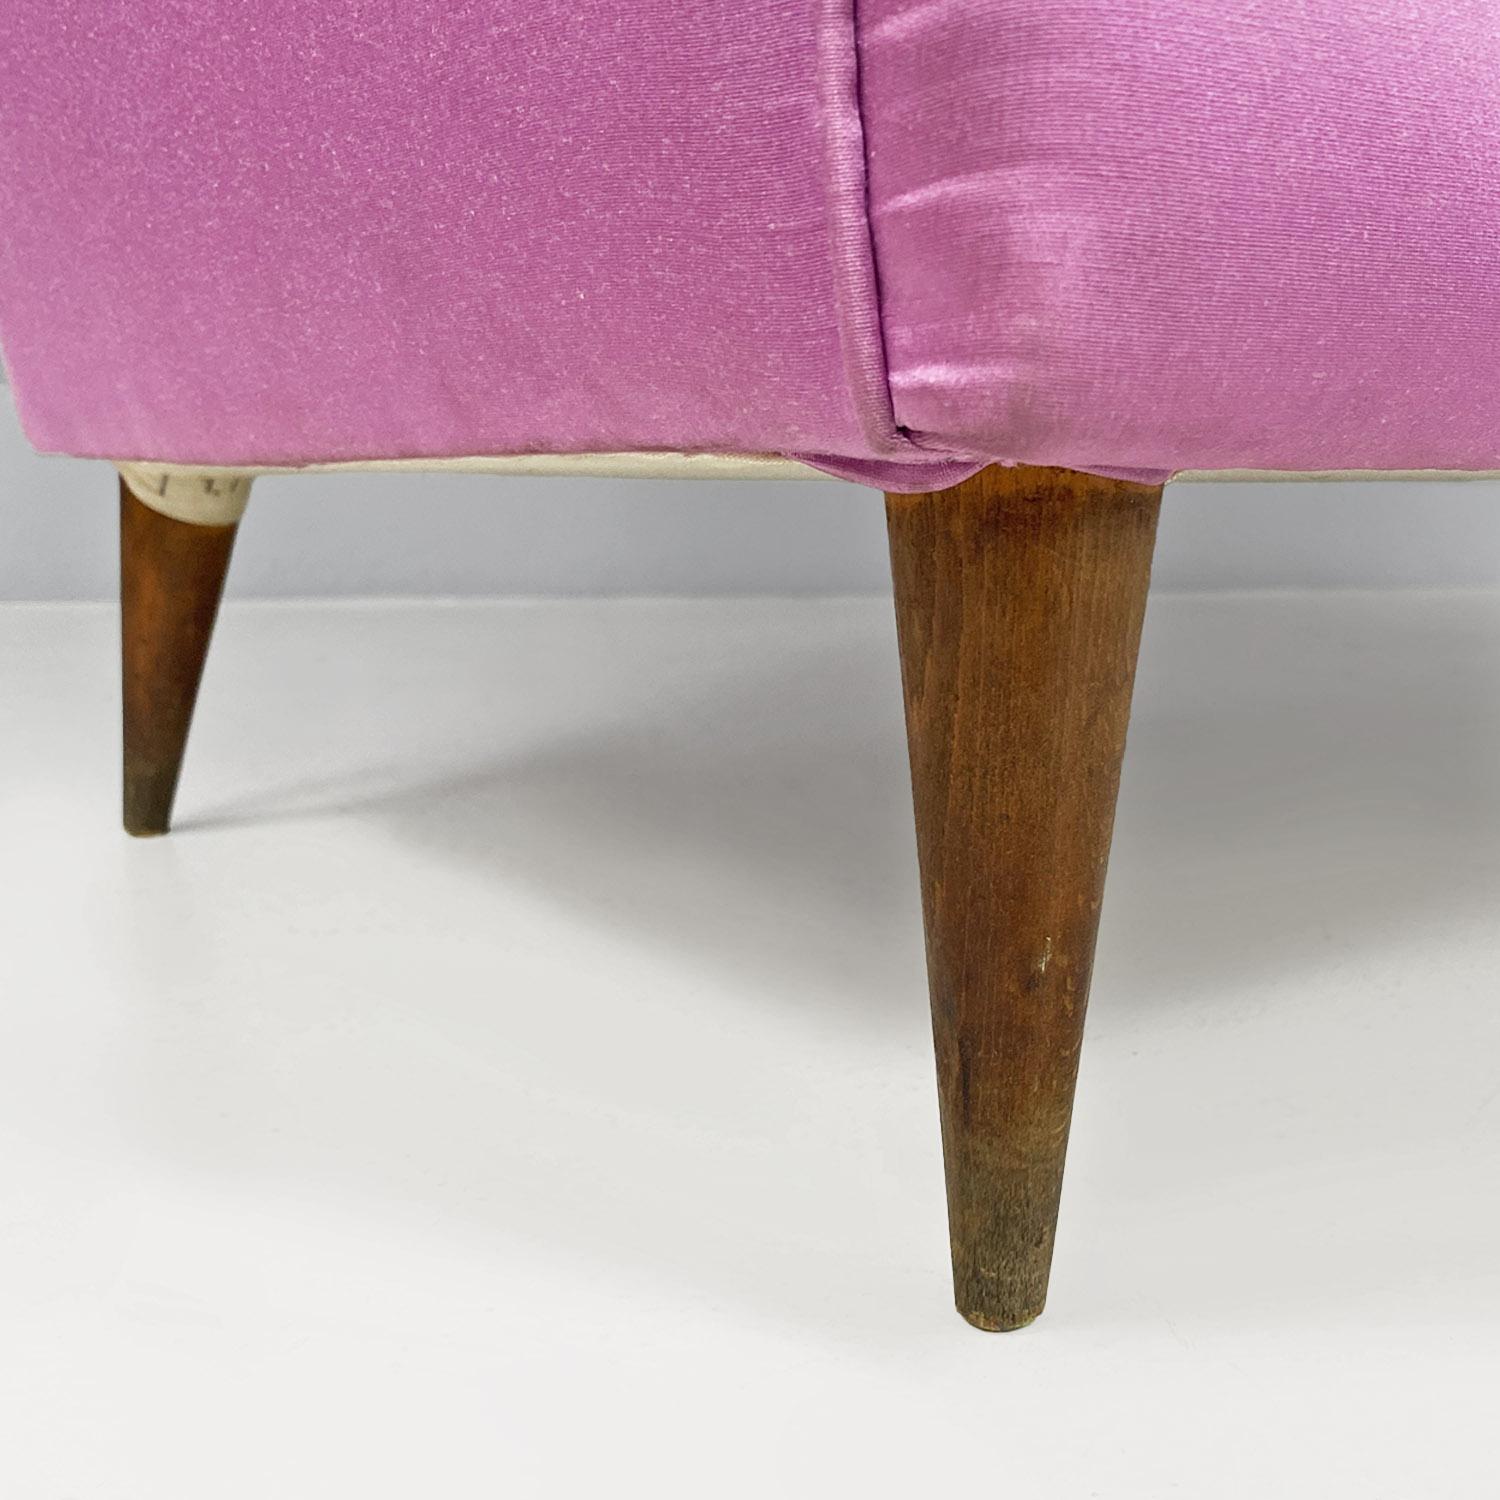 Divano due posti, modernariato italiano, in seta rosa e piedini in legno, 1950s For Sale 1